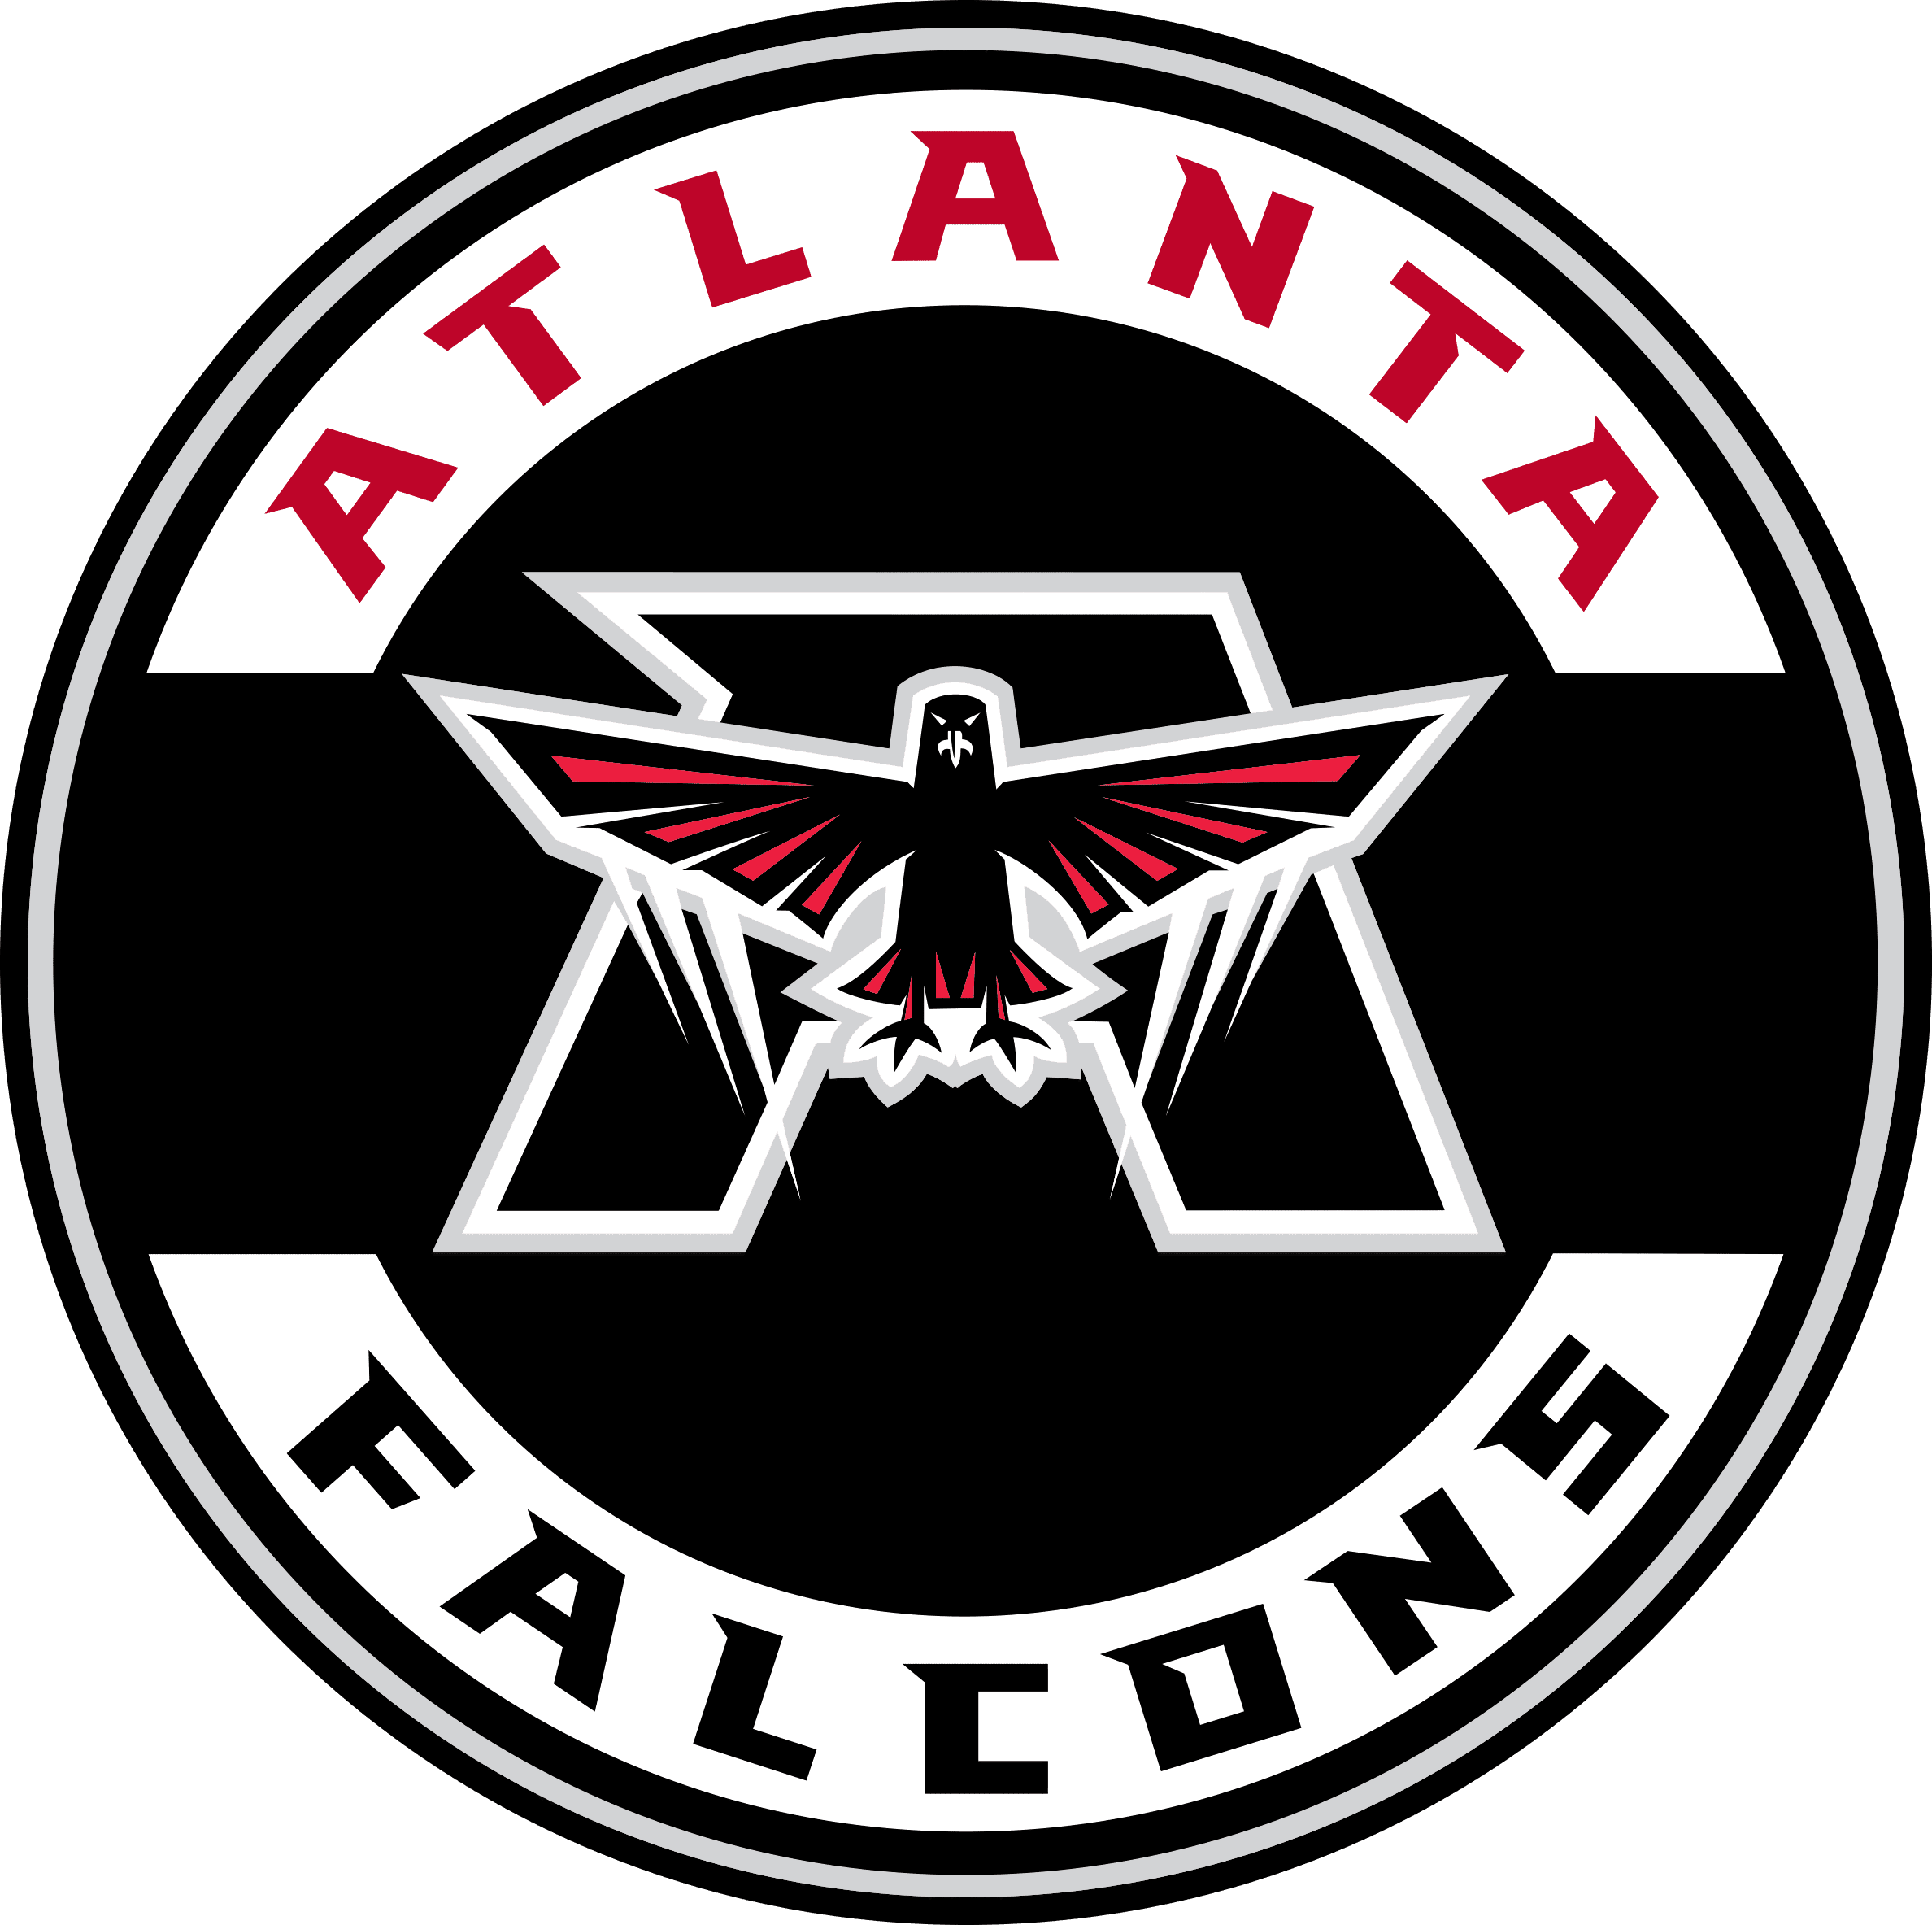 Club Atlético Atlanta Logo PNG Vector (CDR) Free Download